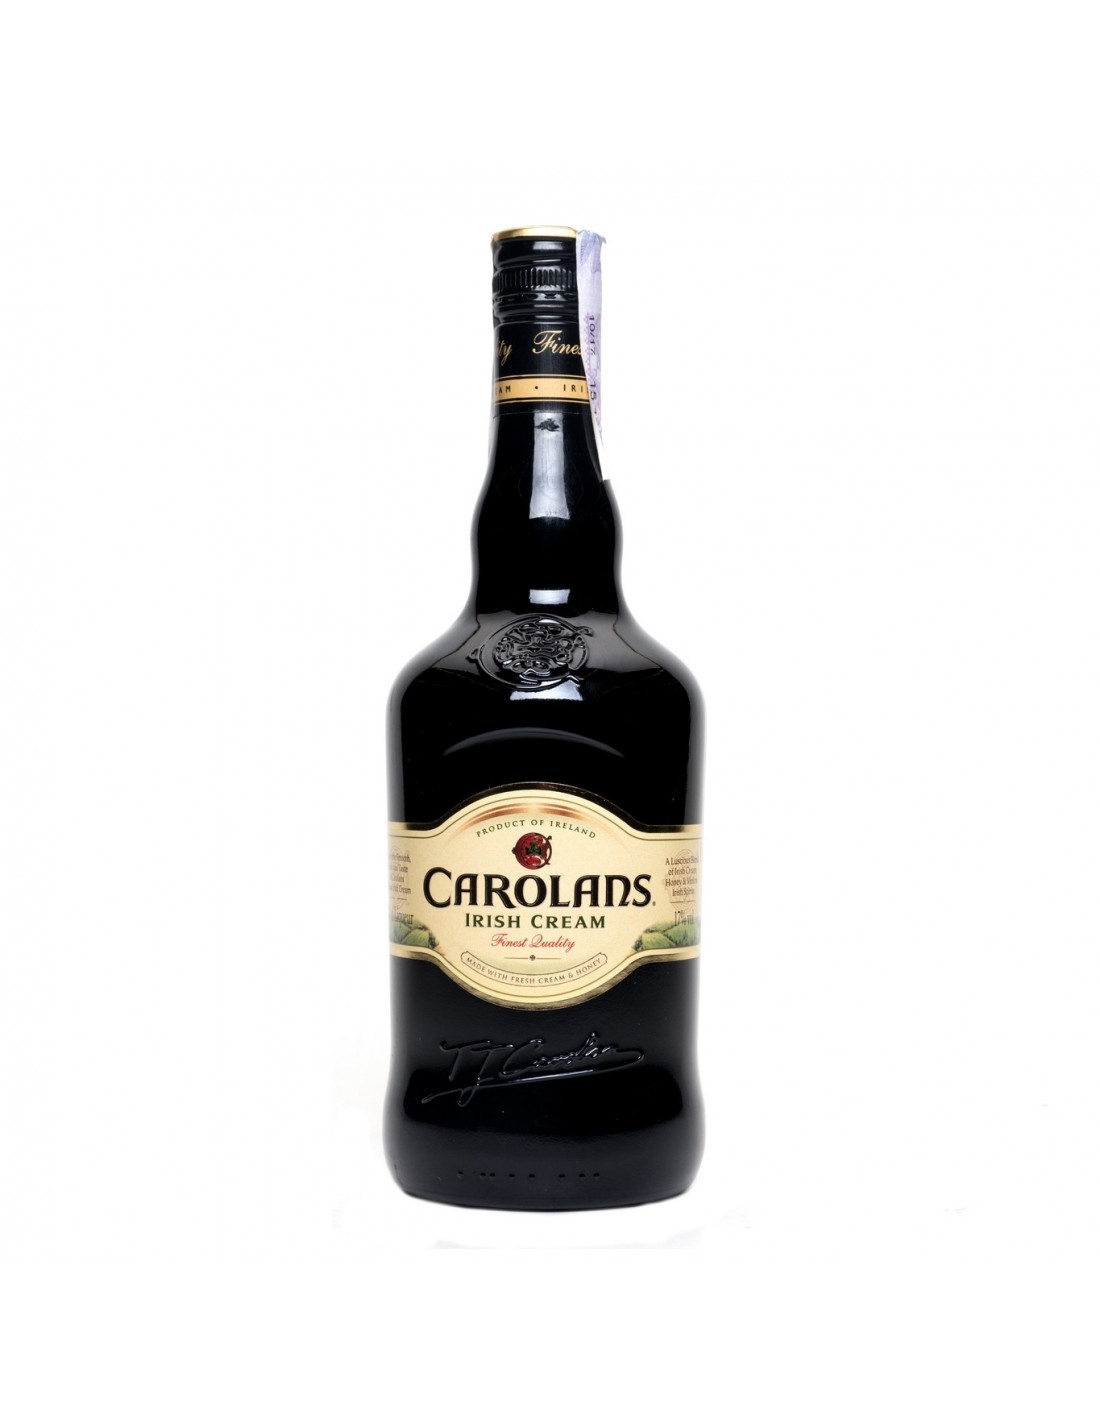 Lichior Carolans Irish Cream 17% alc., 0.7L, Irlanda alcooldiscount.ro